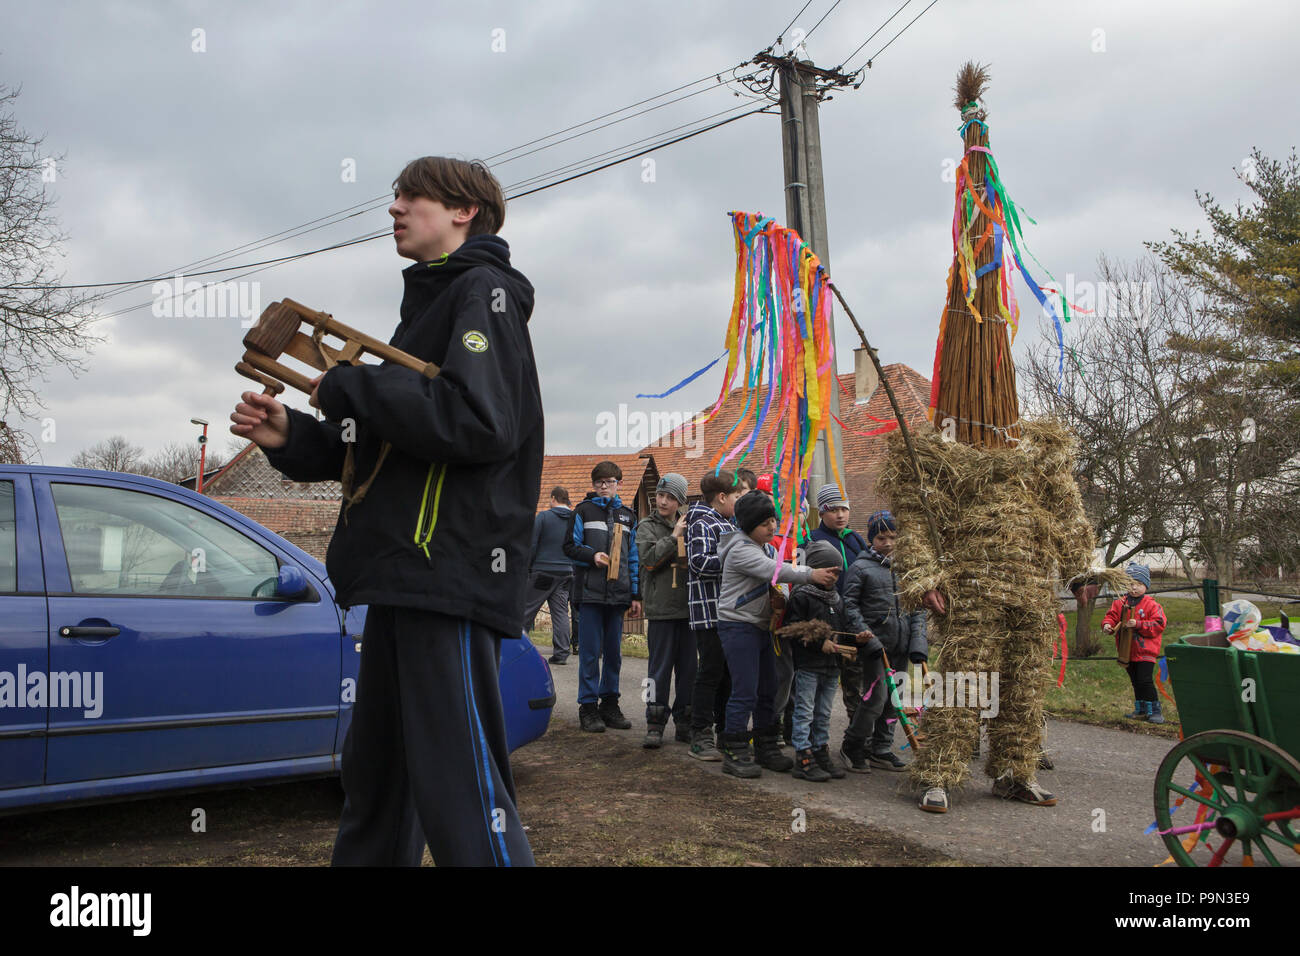 Procession de Pâques traditionnel connu comme Vodění Jidáše Judas (Marche) dans le village de Stradouň dans Pardubice, République tchèque. Une personne vêtue d'un costume de paille représentant Judas s'arrête en face d'une maison tandis que d'autres garçons en torsion et cliquets chanter pendant la procession, le 31 mars 2018. Tôt le matin le samedi saint, l'aîné adolescent dans le village est vêtu d'un ridicule costume de paille. Il est censé effectuer Judas Iscariot de cette façon. Le port de cette tenue obscure, il a mars dans le village de maison en maison escorté par d'autres garçons, qui tournez à cliquet en bois Banque D'Images